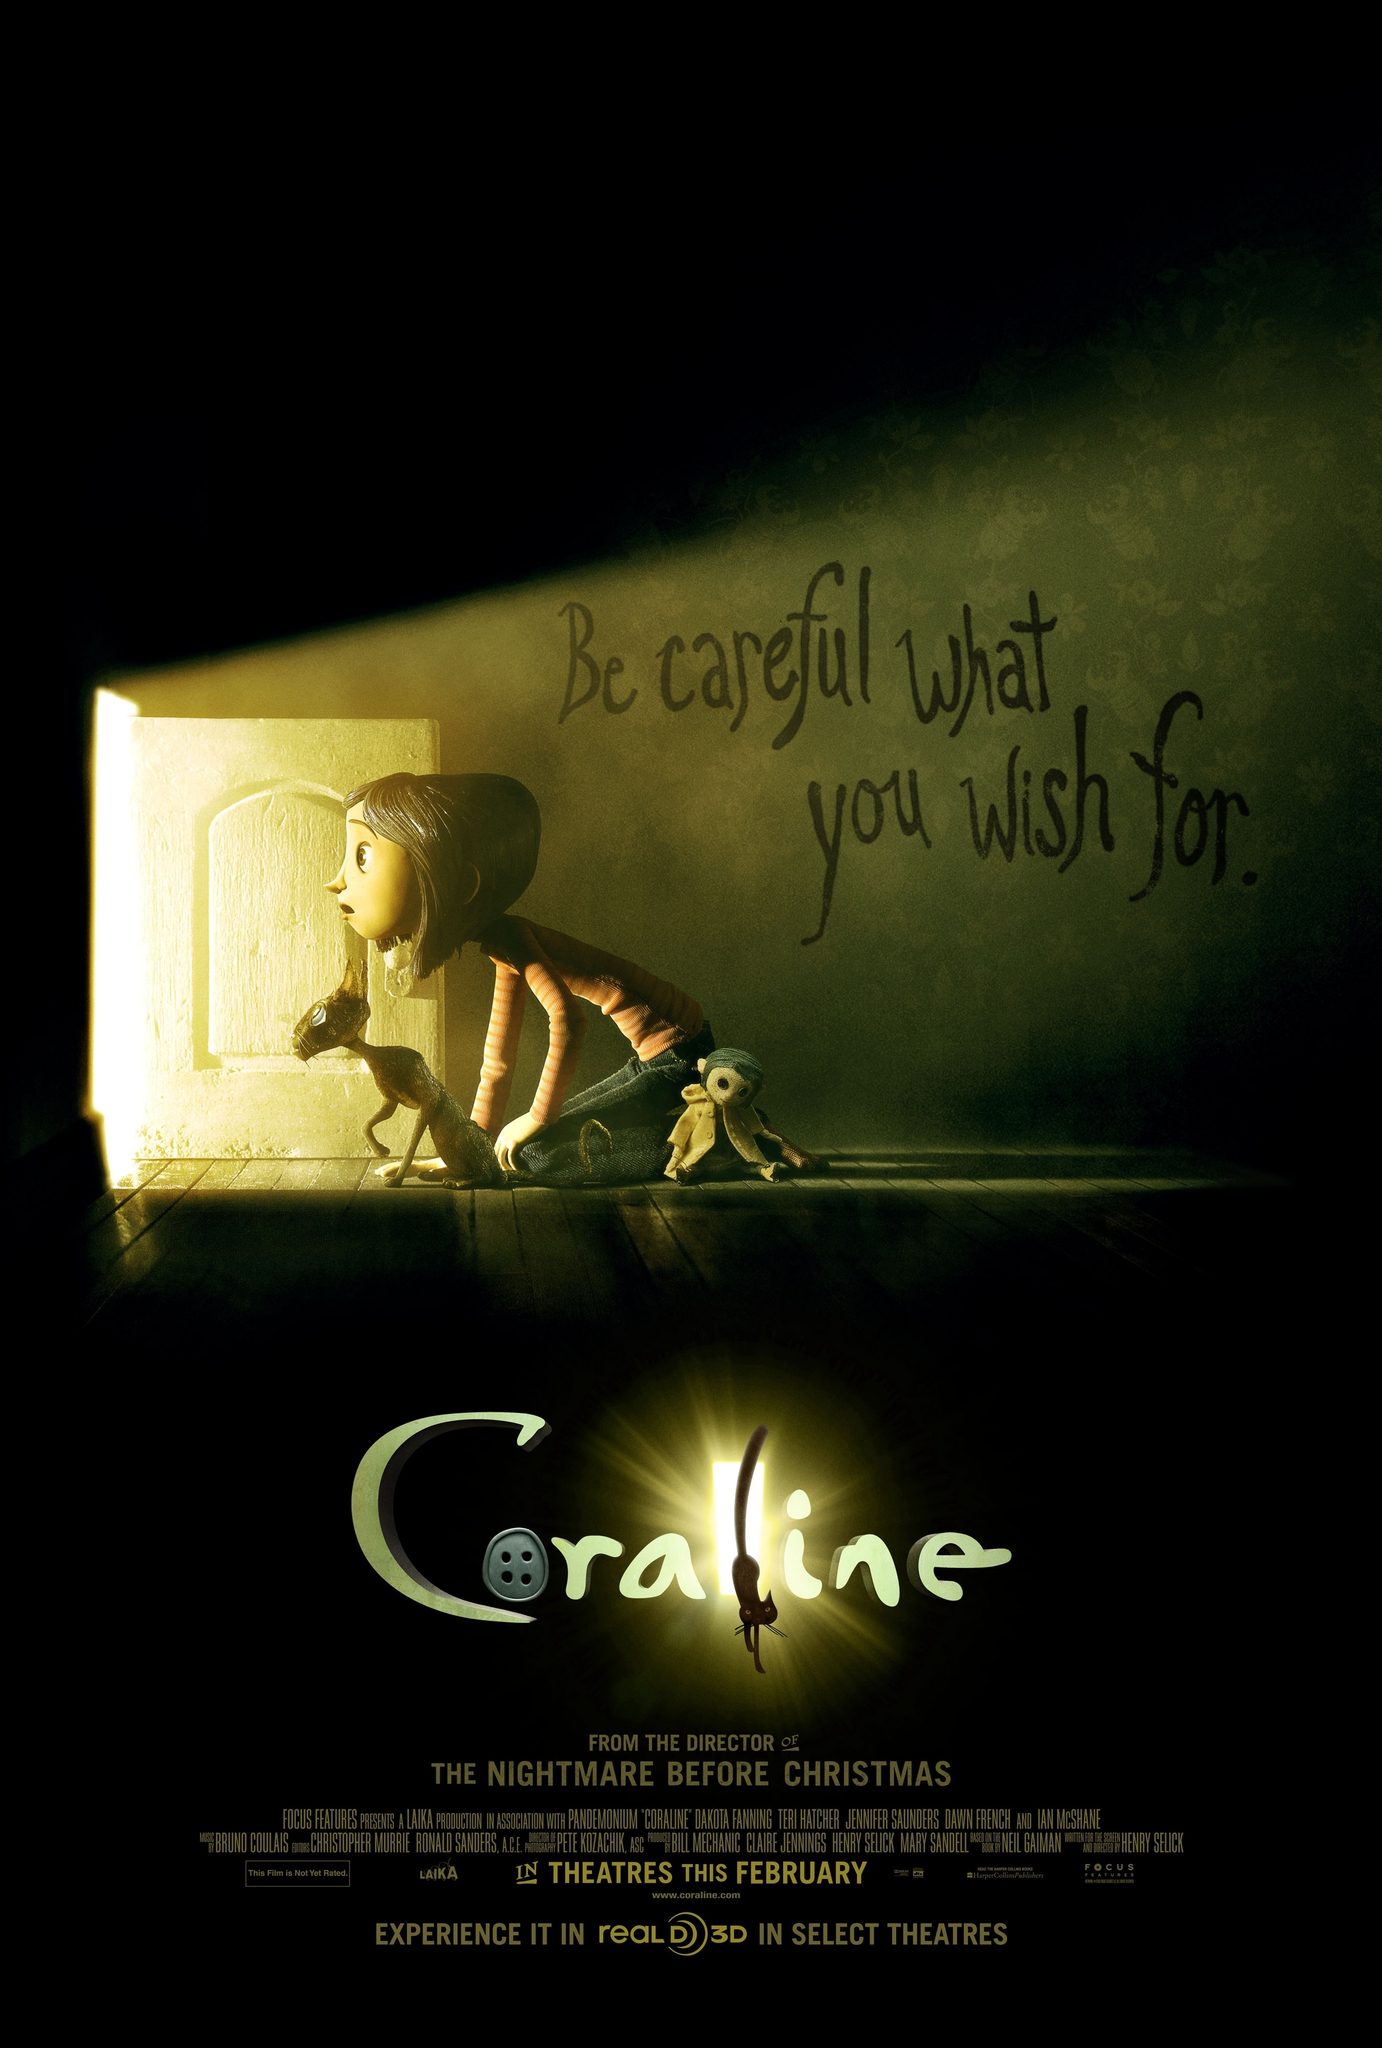 ดูหนังออนไลน์ Coraline โครอลไลน์กับโลกมิติพิศวง